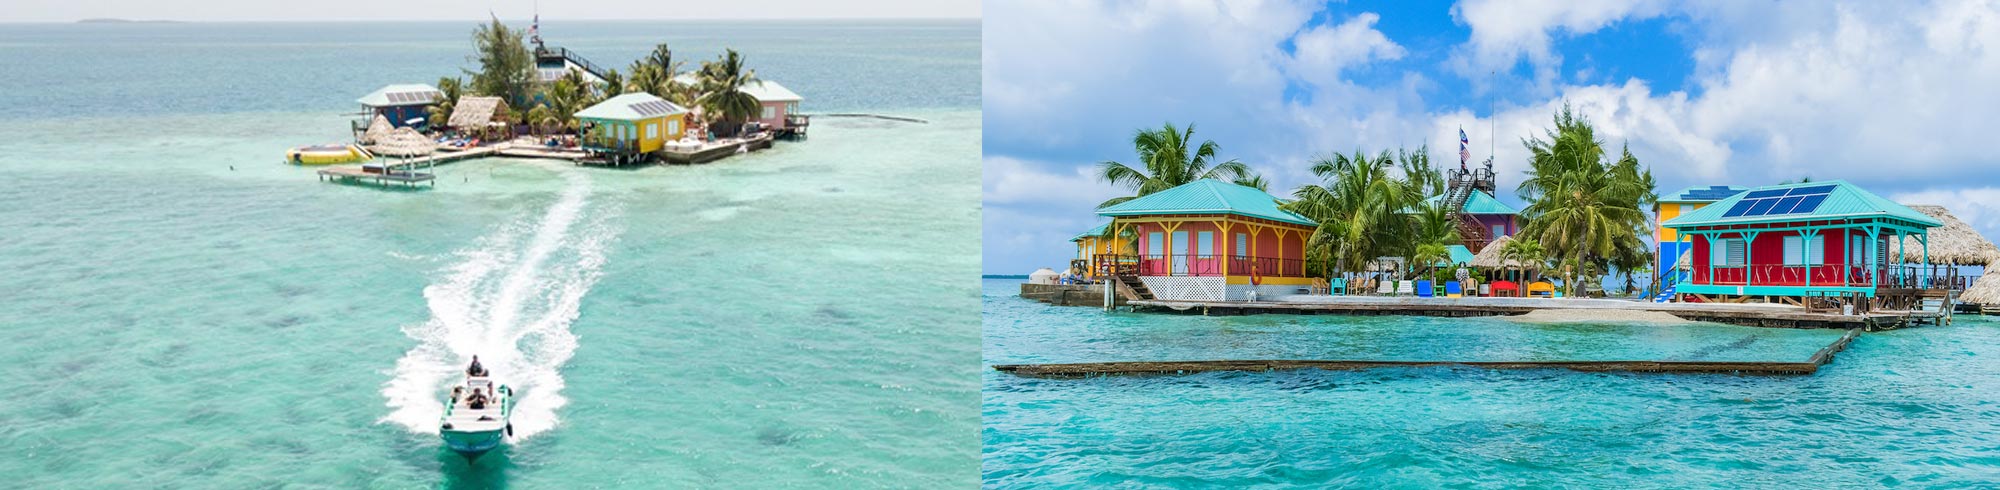 King Lewey Island Resort Belize